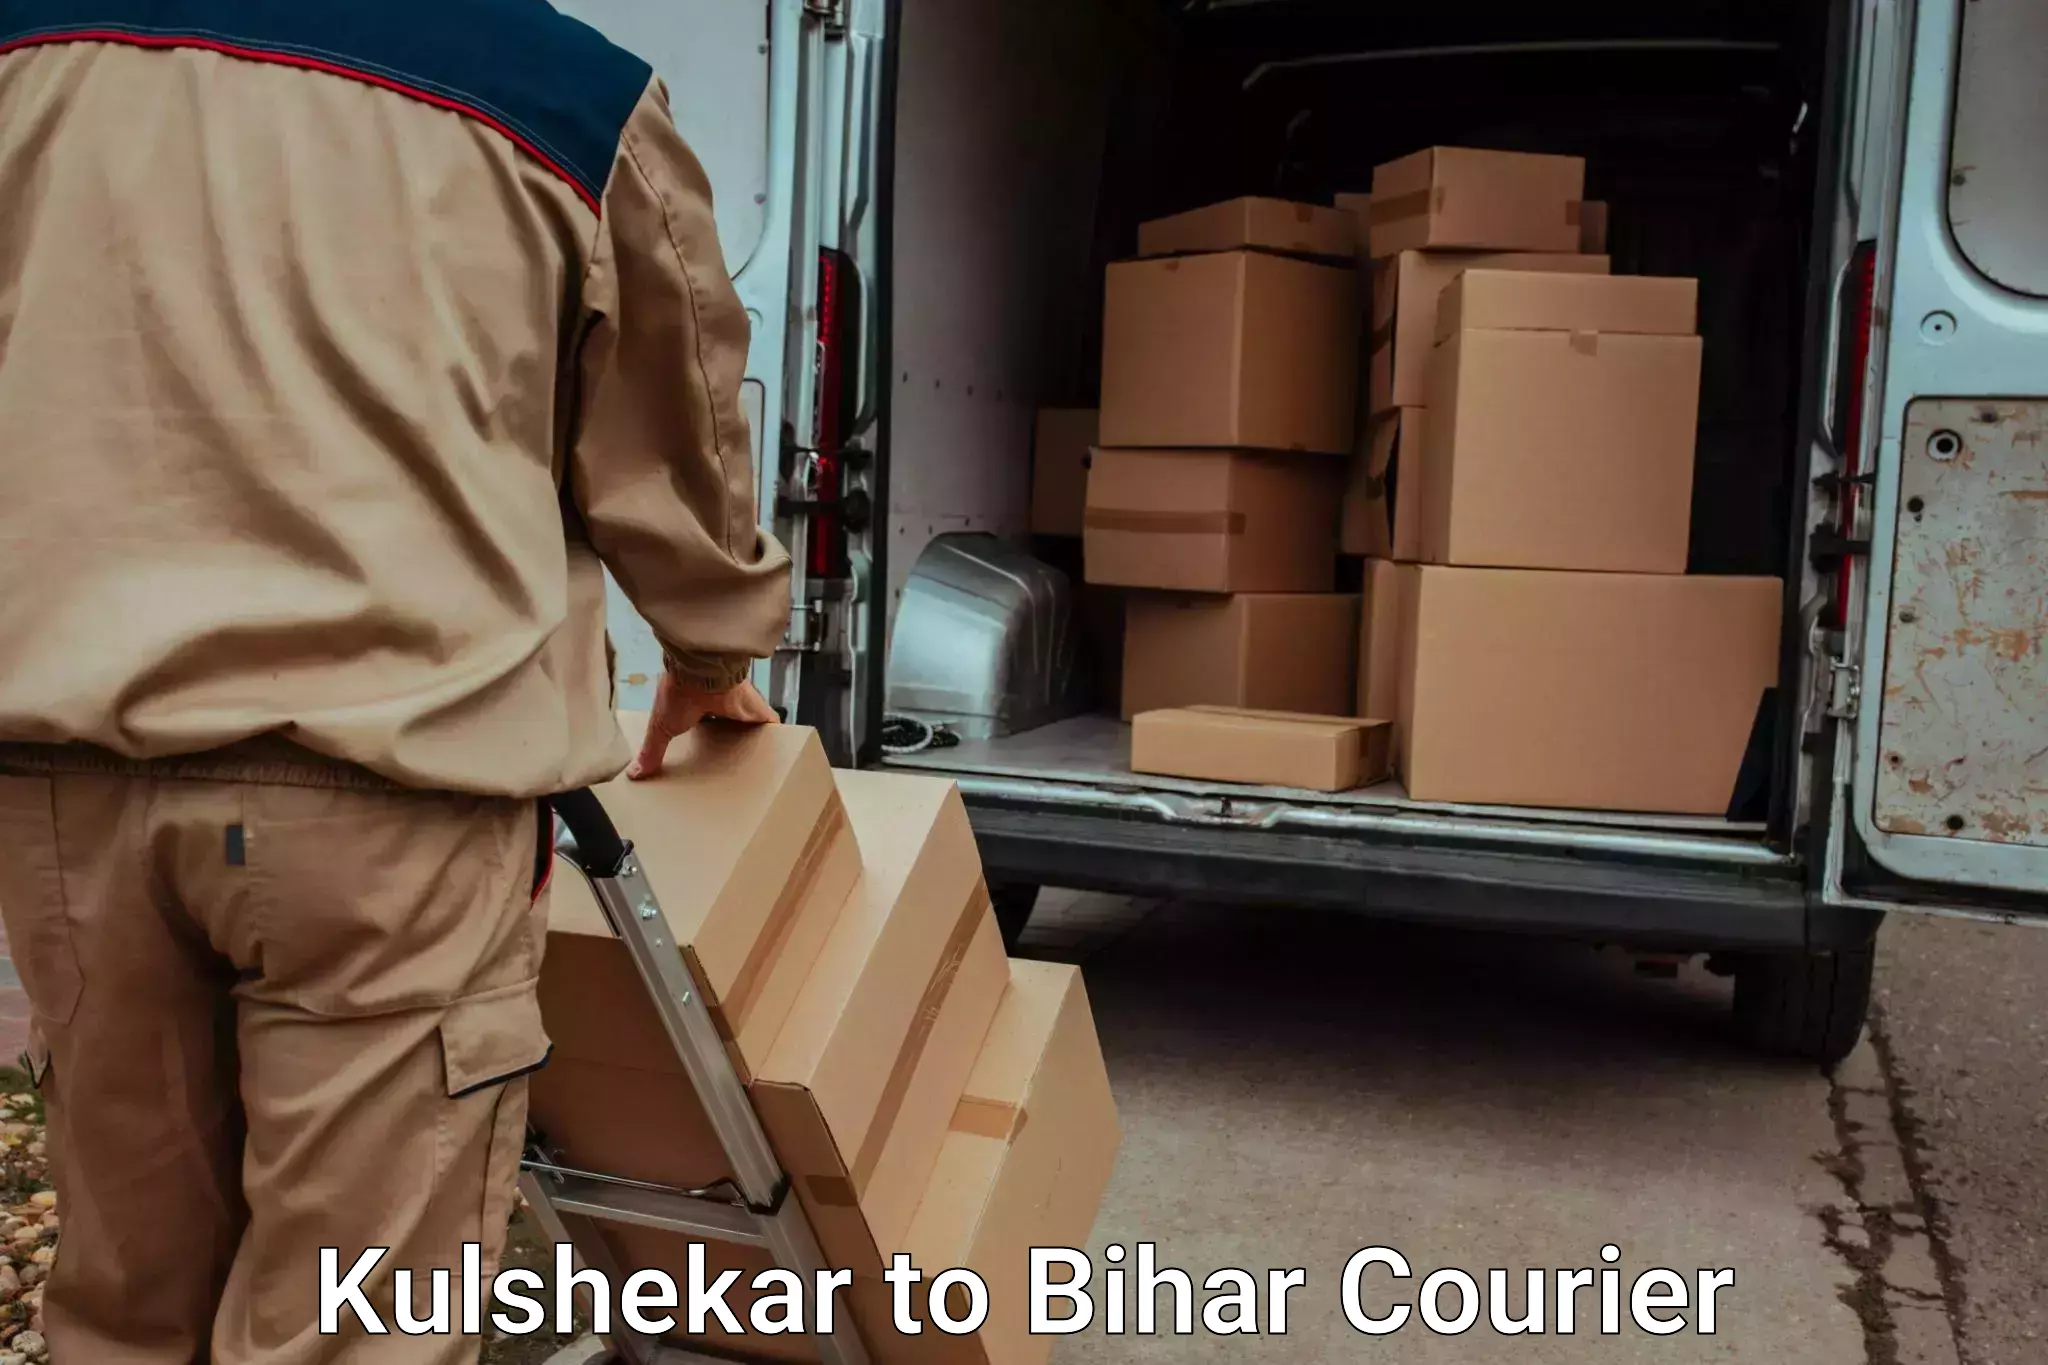 Luggage shipping service Kulshekar to Giddha